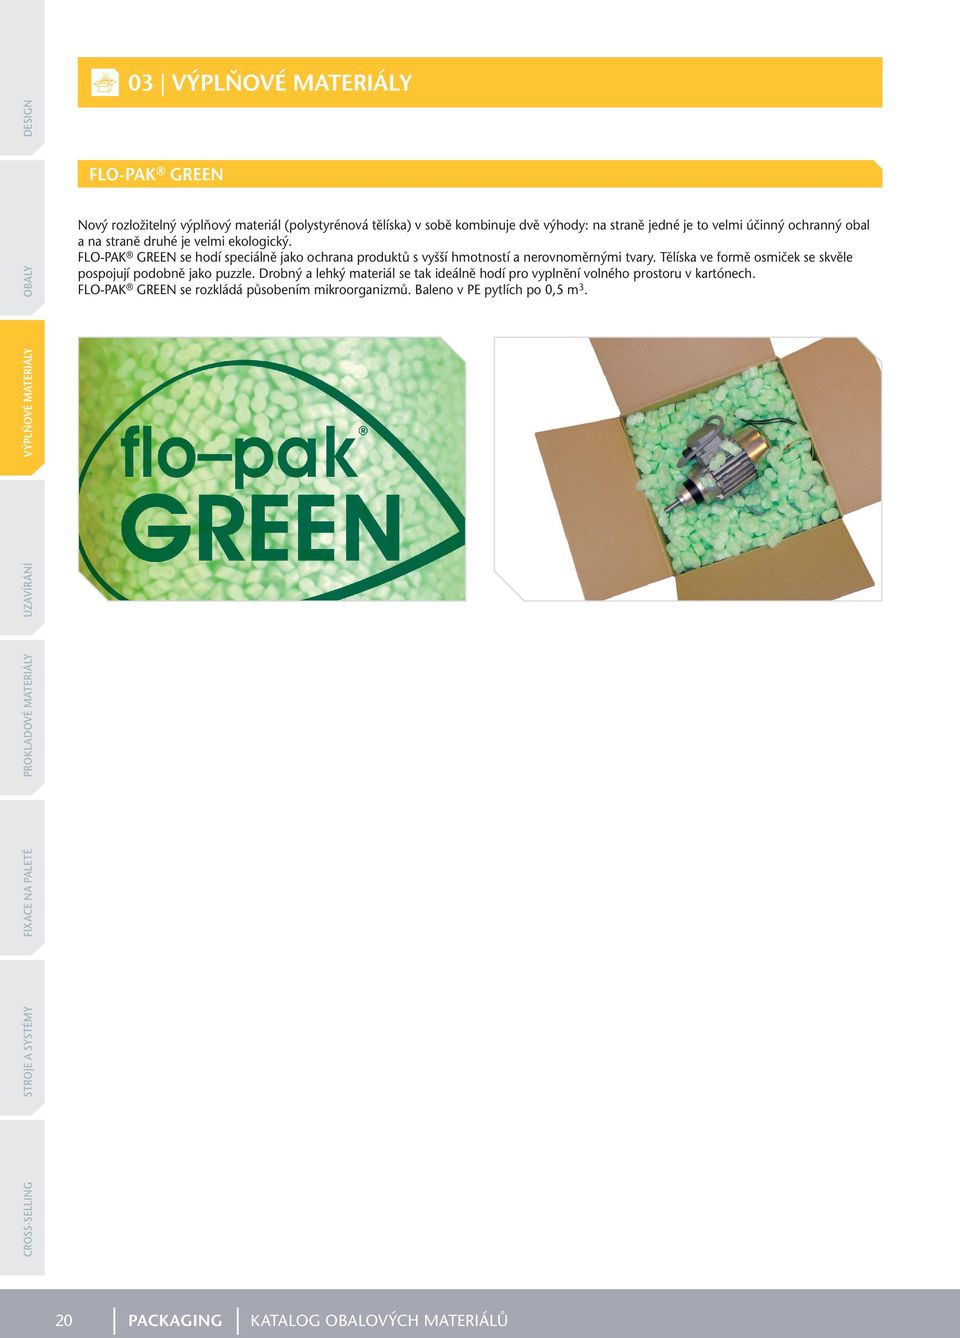 FLO-PAK GREEN se hodí speciálně jako ochrana produktů s vyšší hmotností a nerovnoměrnými tvary.